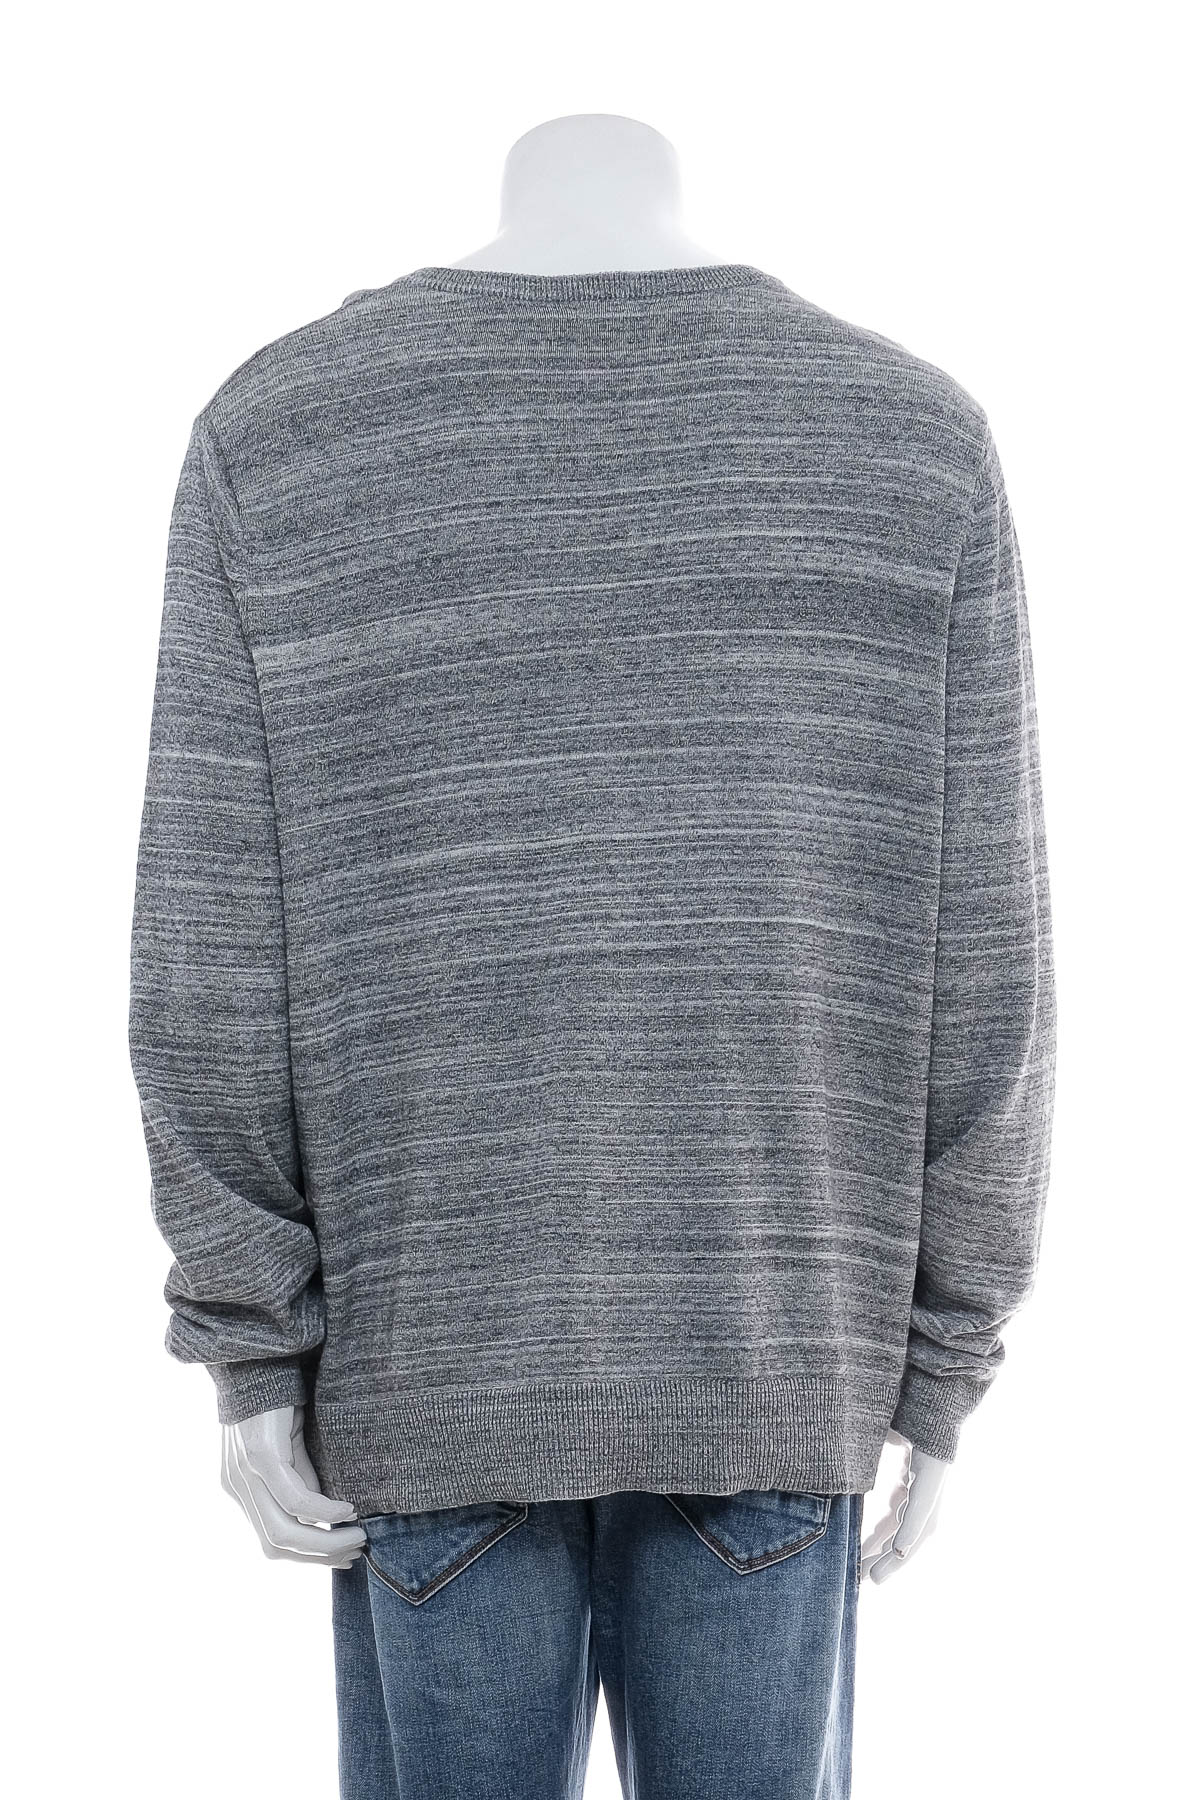 Men's sweater - MERONA - 1